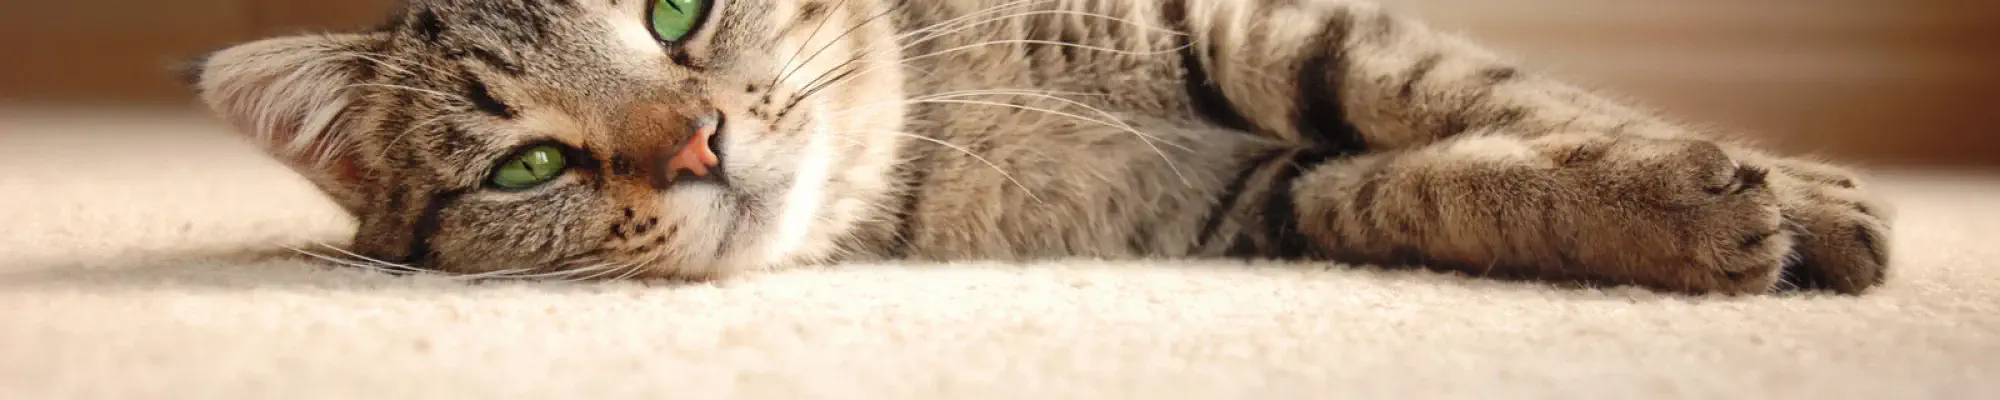 cat laying on plush carpet